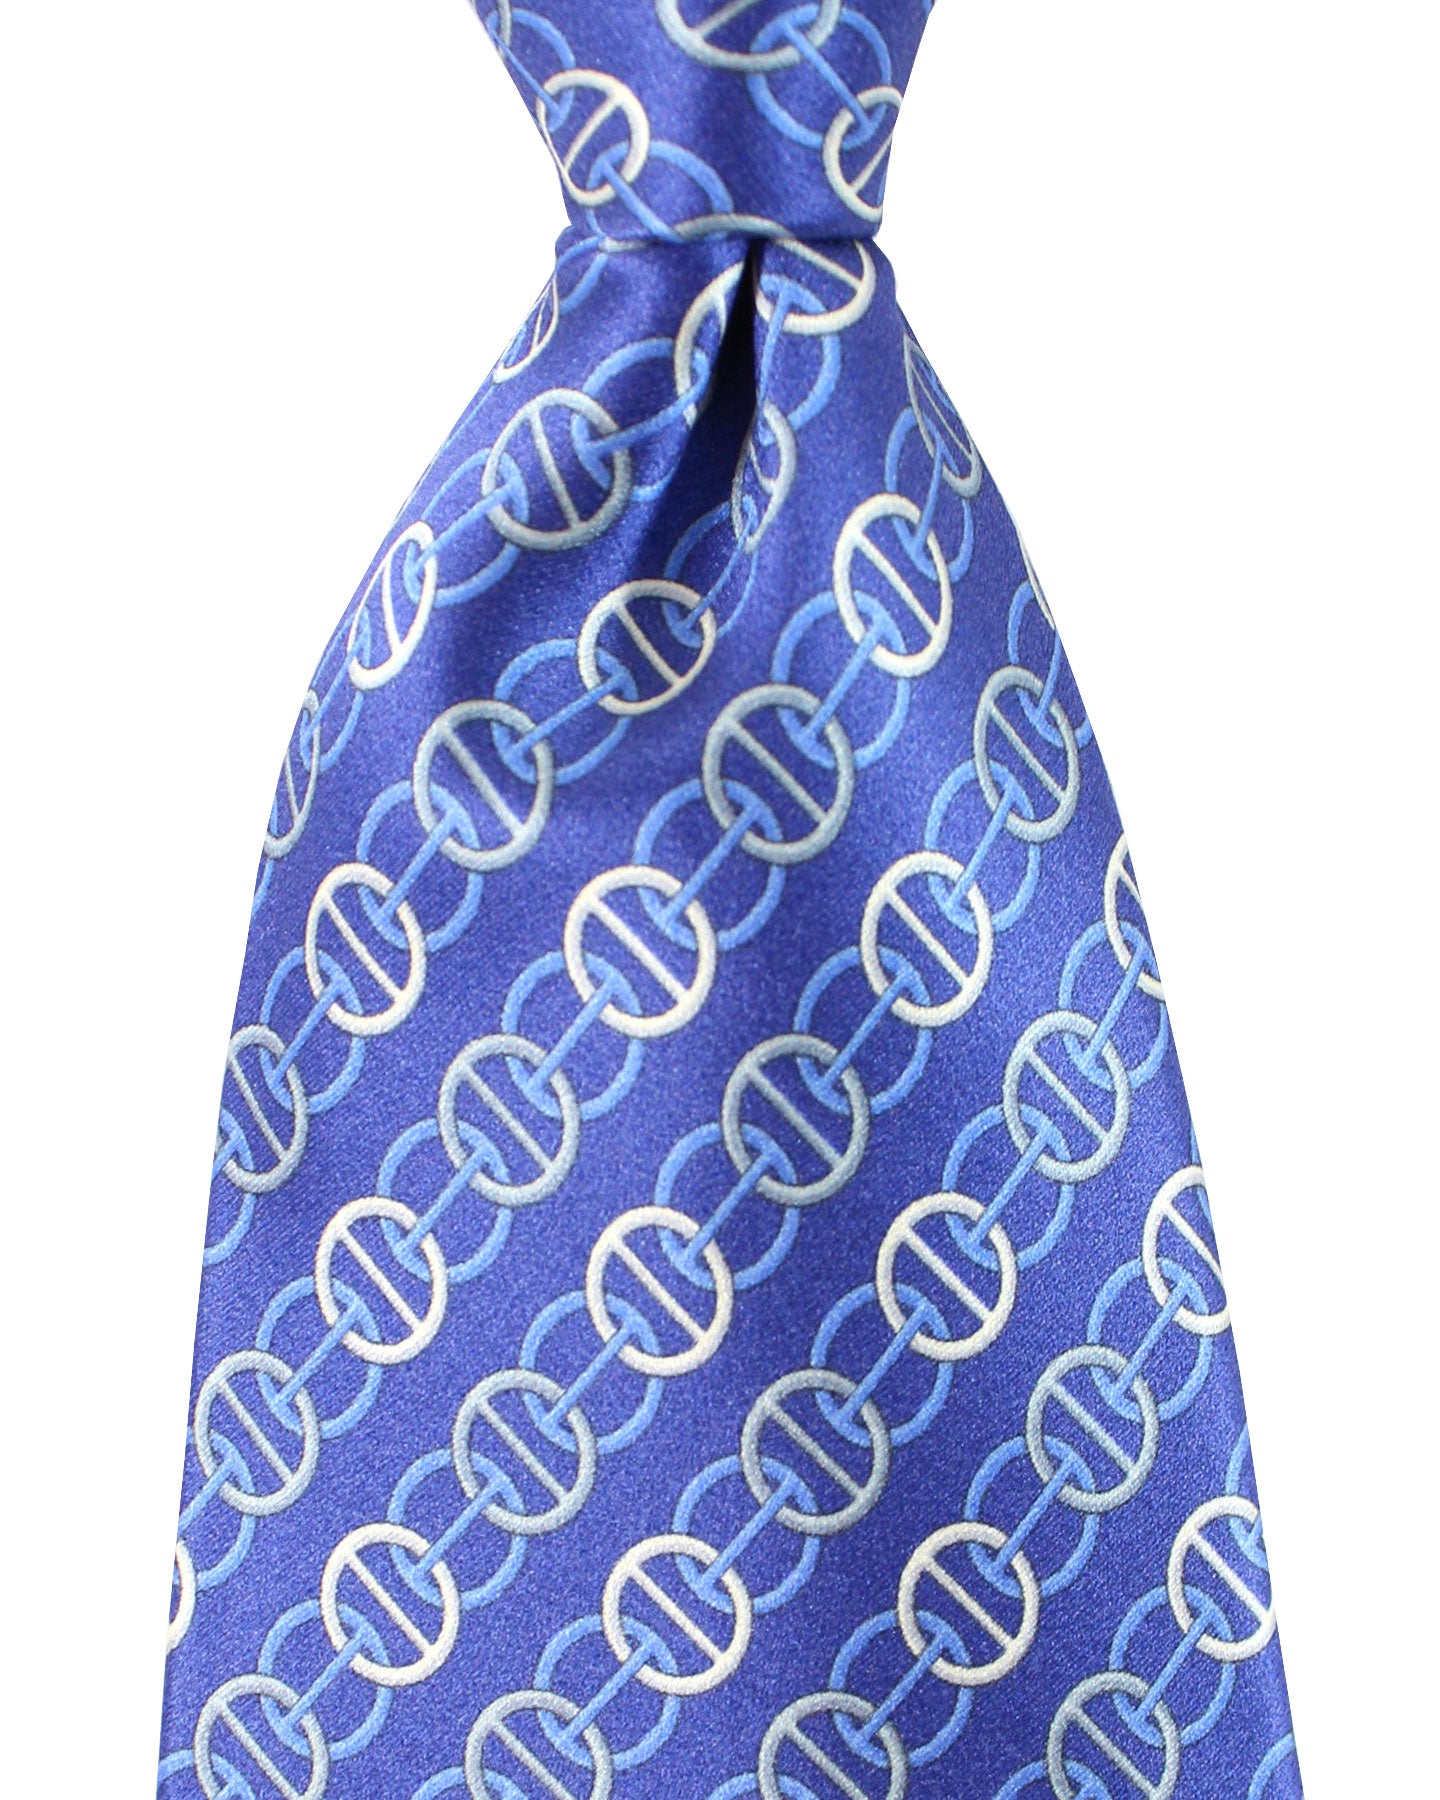 Zilli Silk Tie Dark Blue Gray Silver Stripes Geometric Design - Wide Necktie